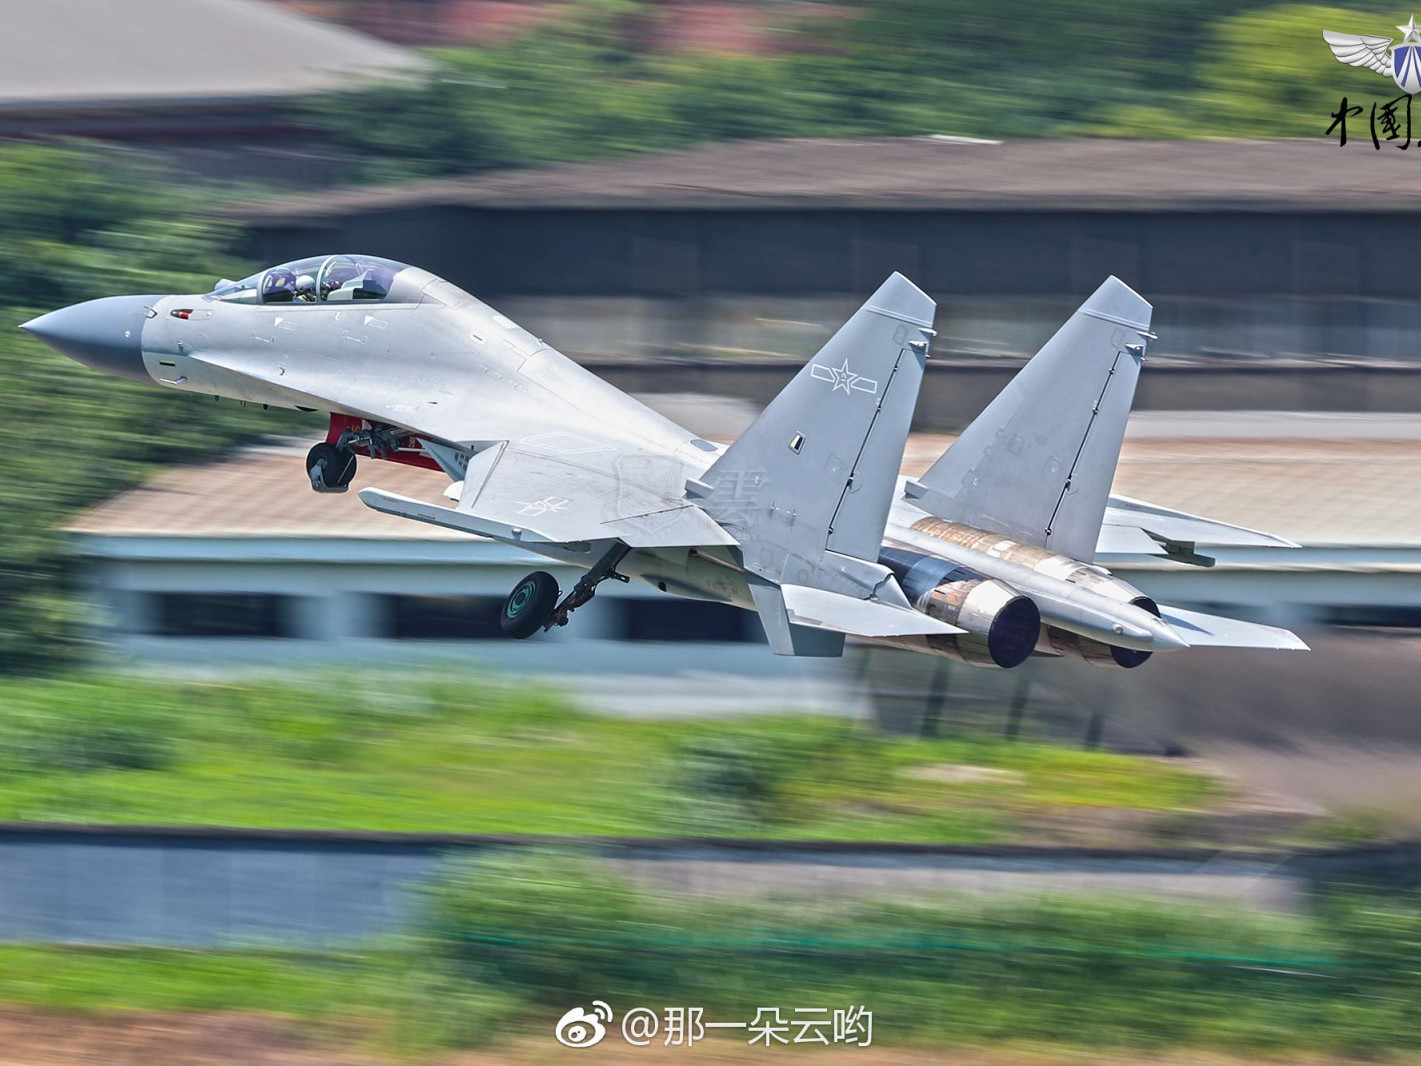 БНХАУ сөнөөгч онгоц хөөргөсний дараа Тайвань өндөржүүлсэн бэлэн байдалд шилжжээ